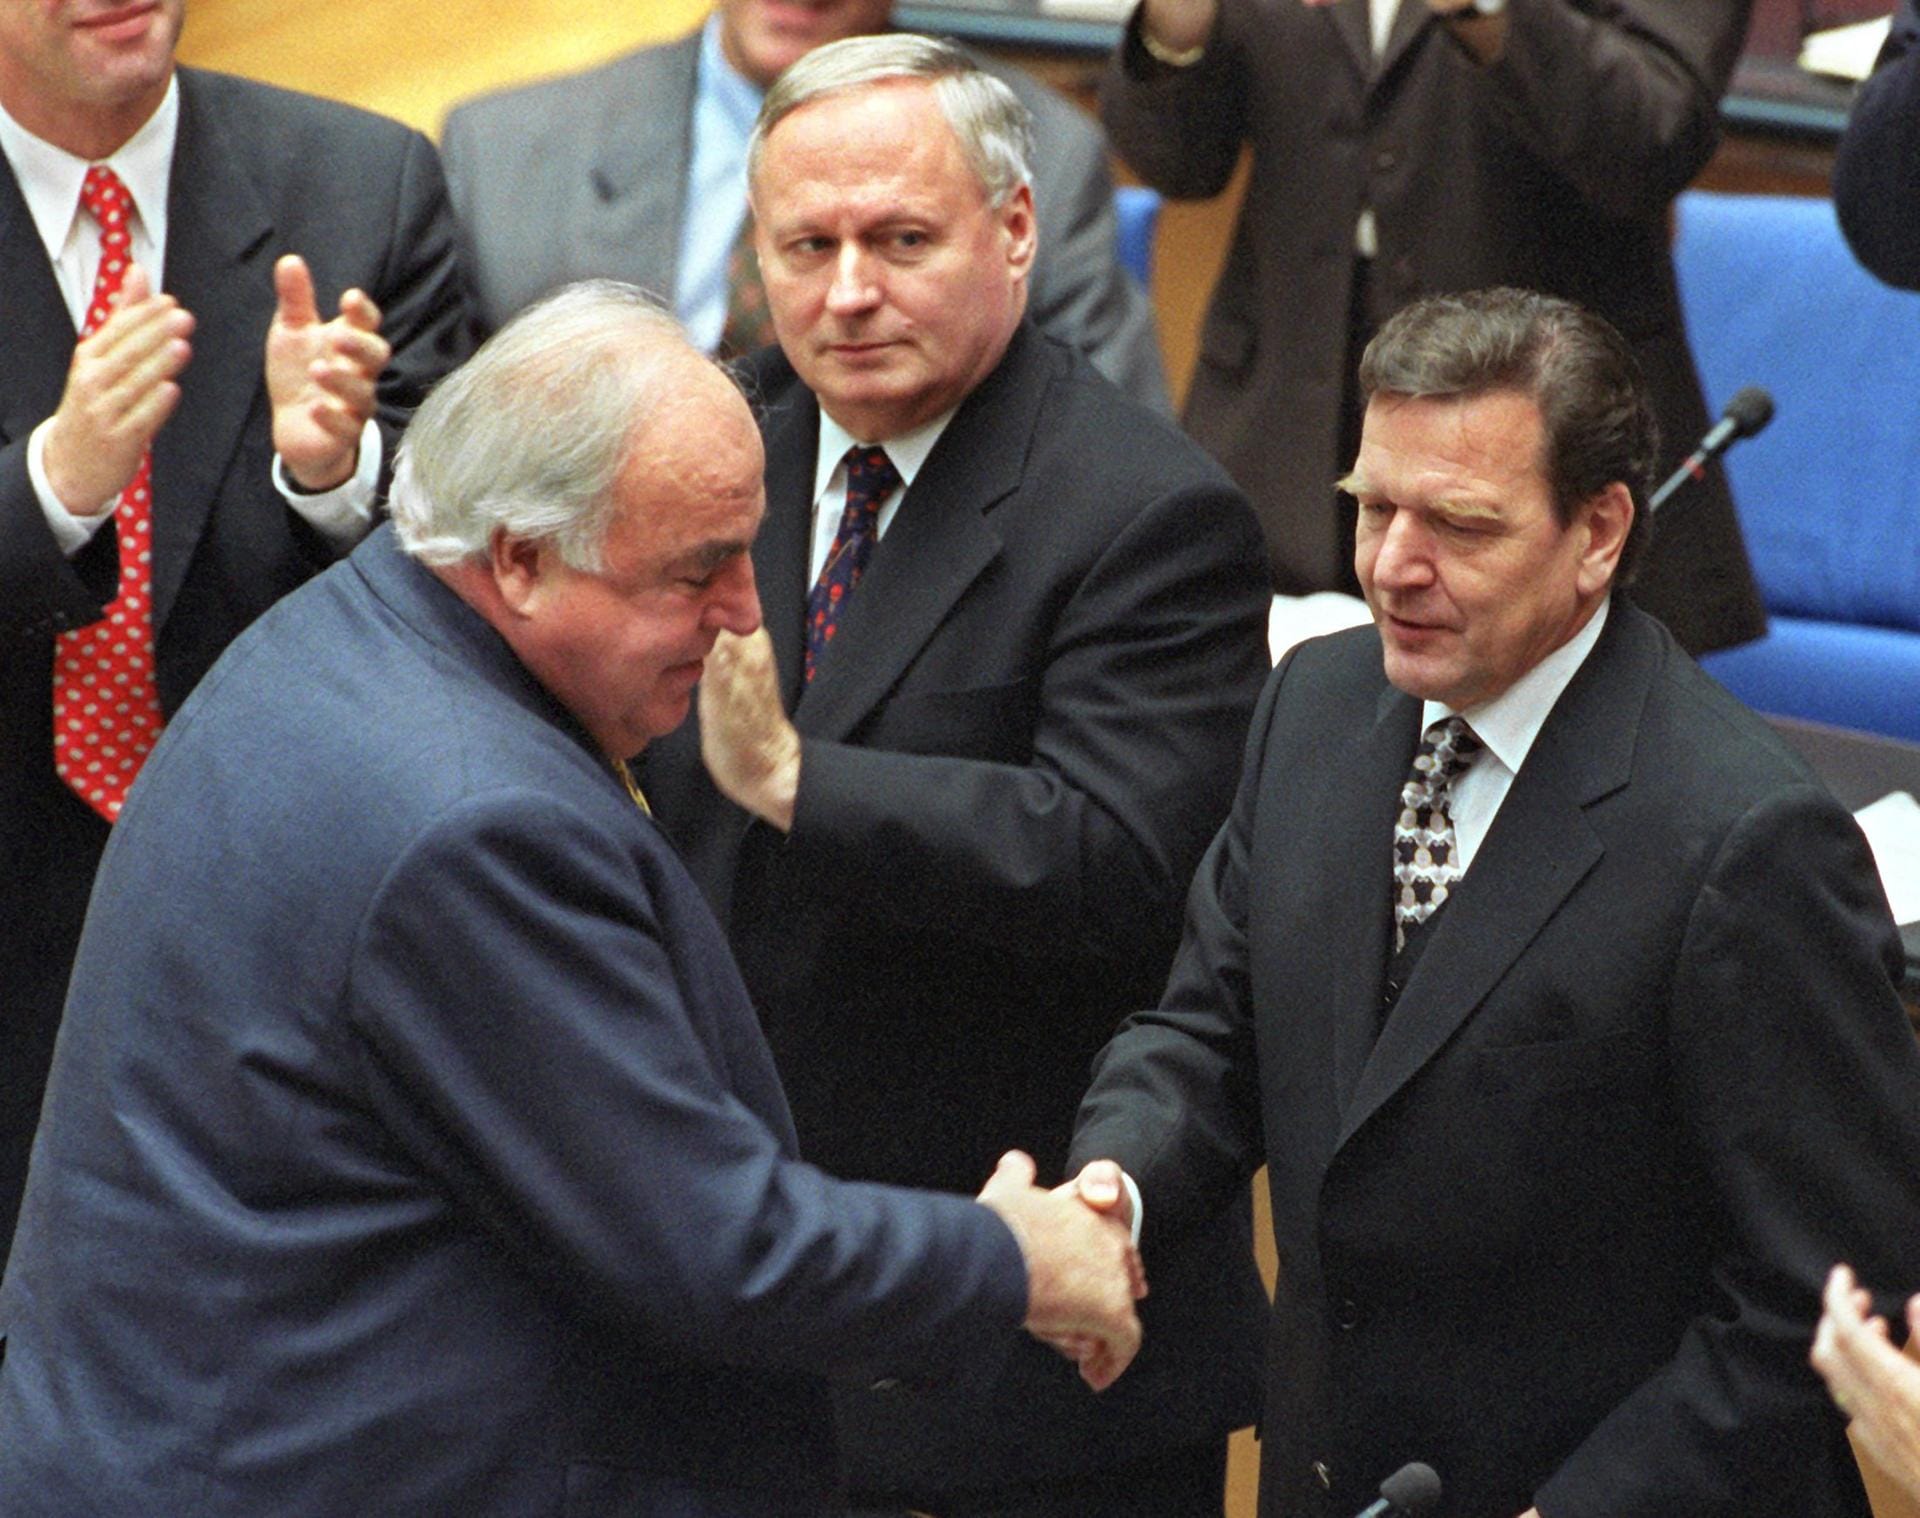 Oktober 1998: Helmut Kohl gratuliert als erster im Bundestag Gerhard Schröder nach dessen Wahl zum Bundeskanzler. Damit wird das erste rot-grüne Bündnis auf Bundesebene Realität.